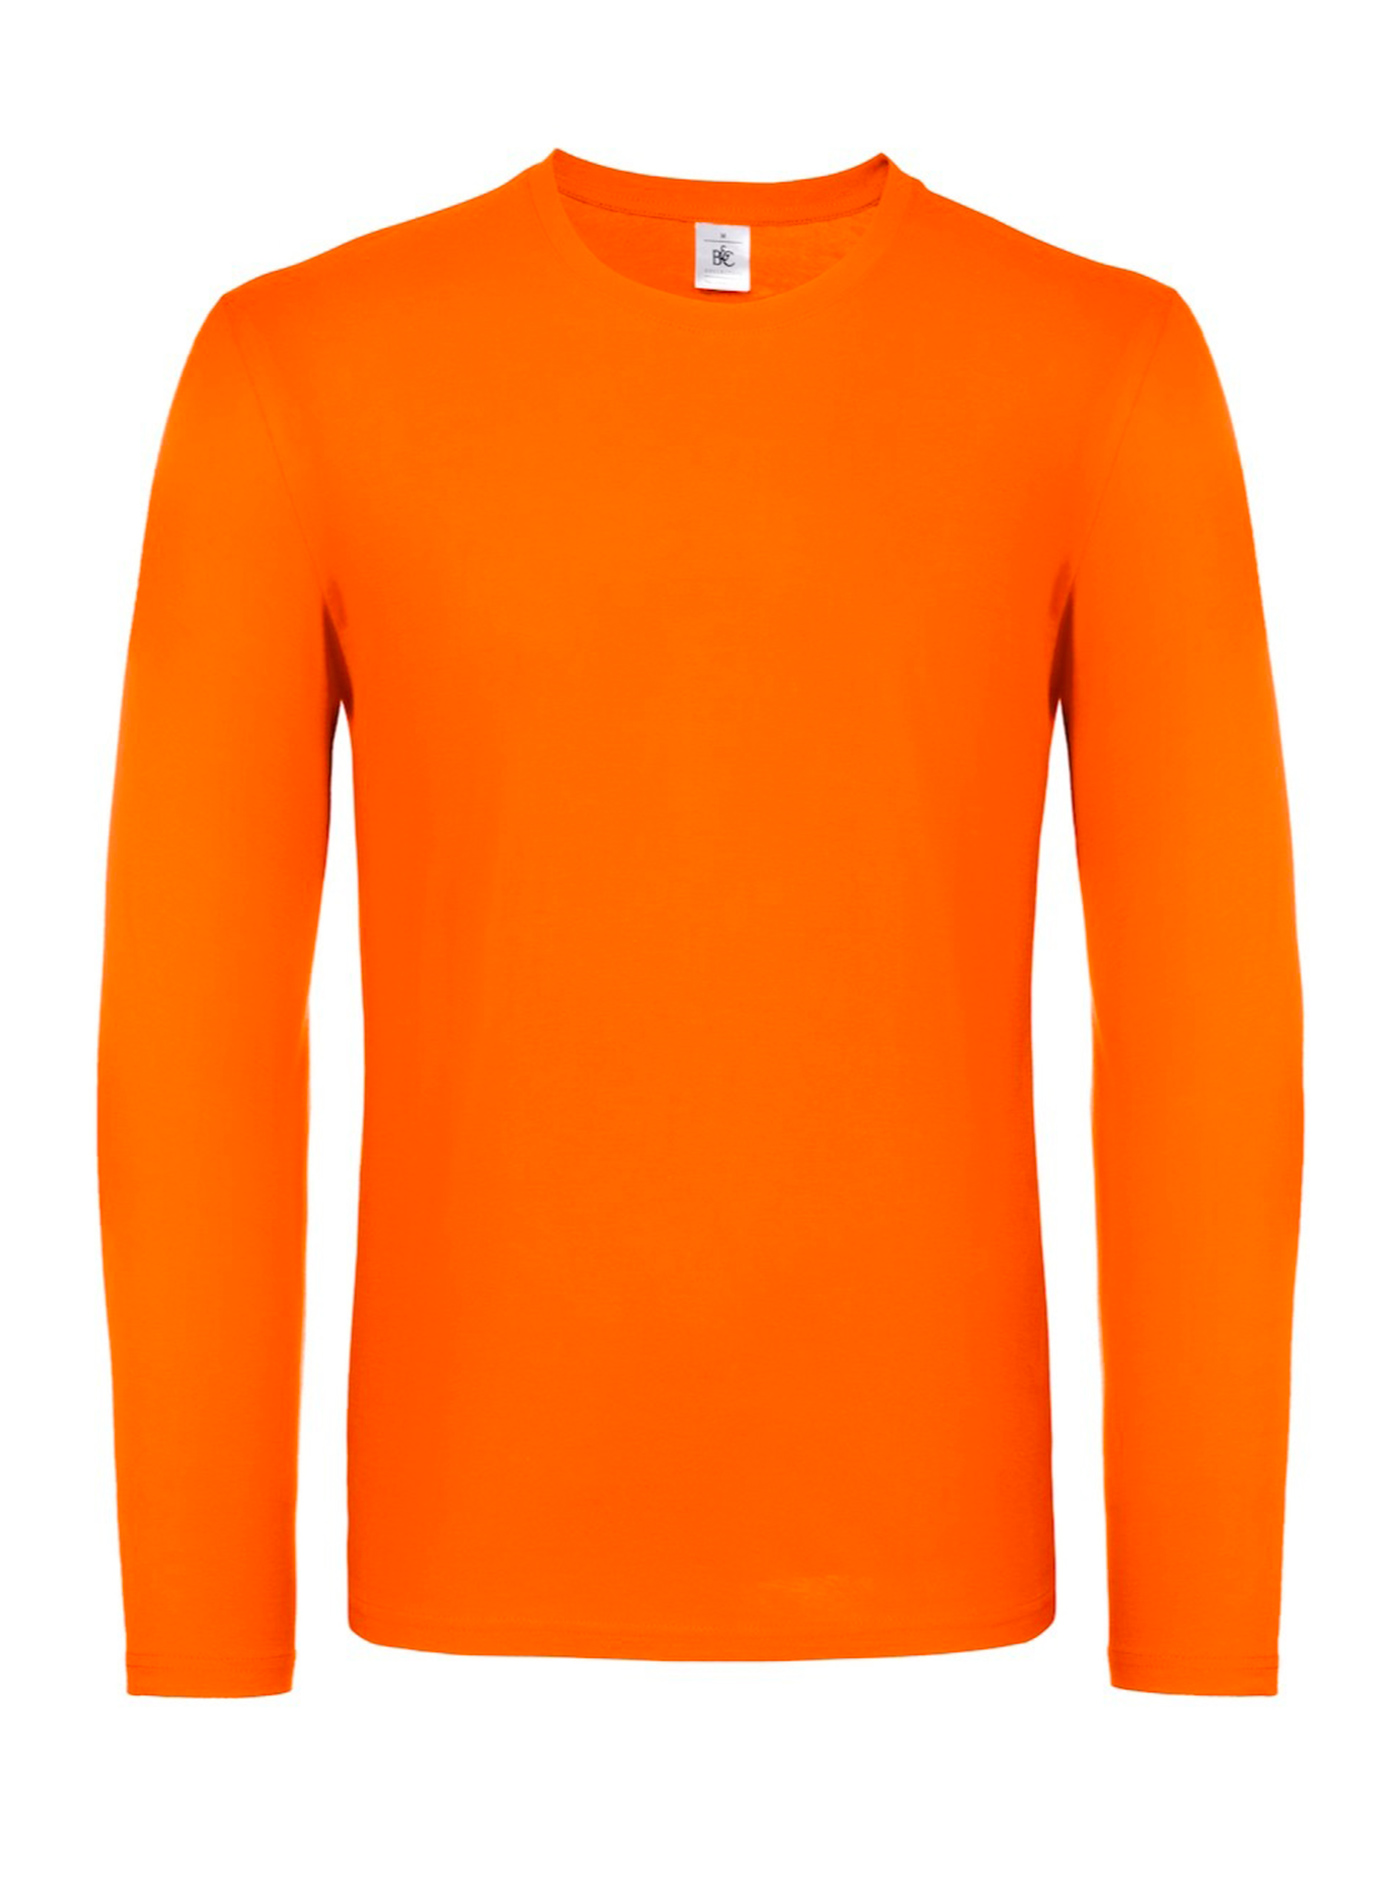 Tričko s dlouhým rukávem B&C Collection - Oranžová XL